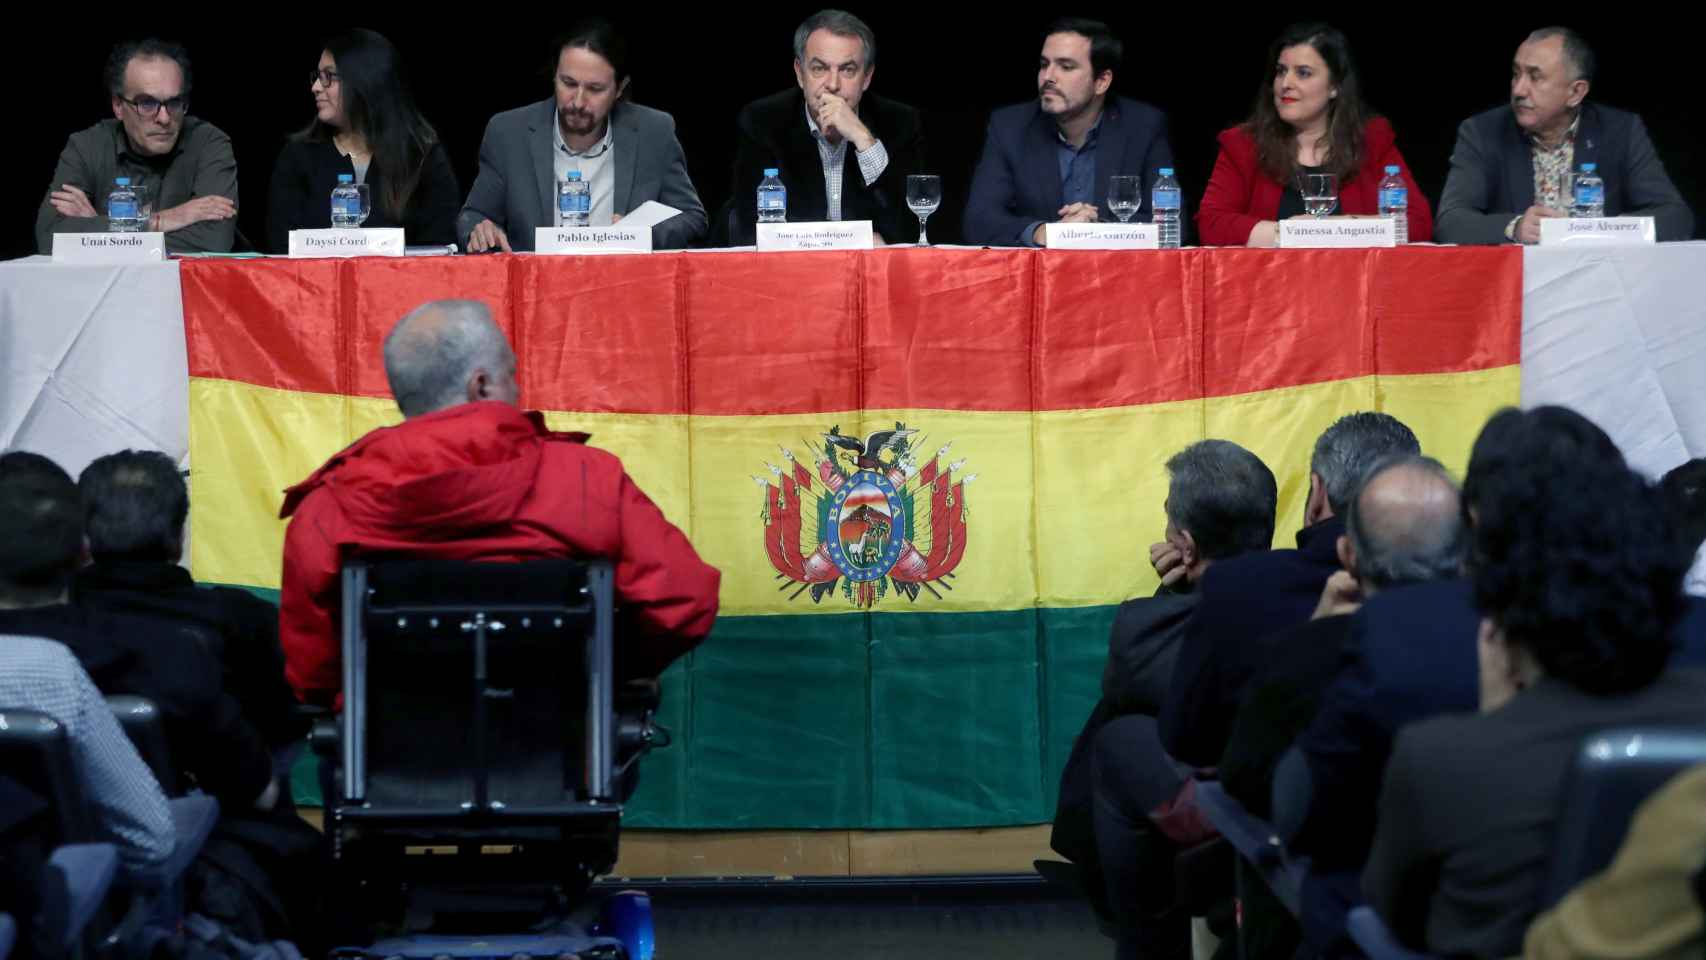 José Luis Rodríguez Zapatero (c), el líder de Podemos Pablo Iglesias (3i) y el líder de Izquierda Unida Alberto Garzón (3d), entre otros, durante el acto de apoyo a Evo Morales.